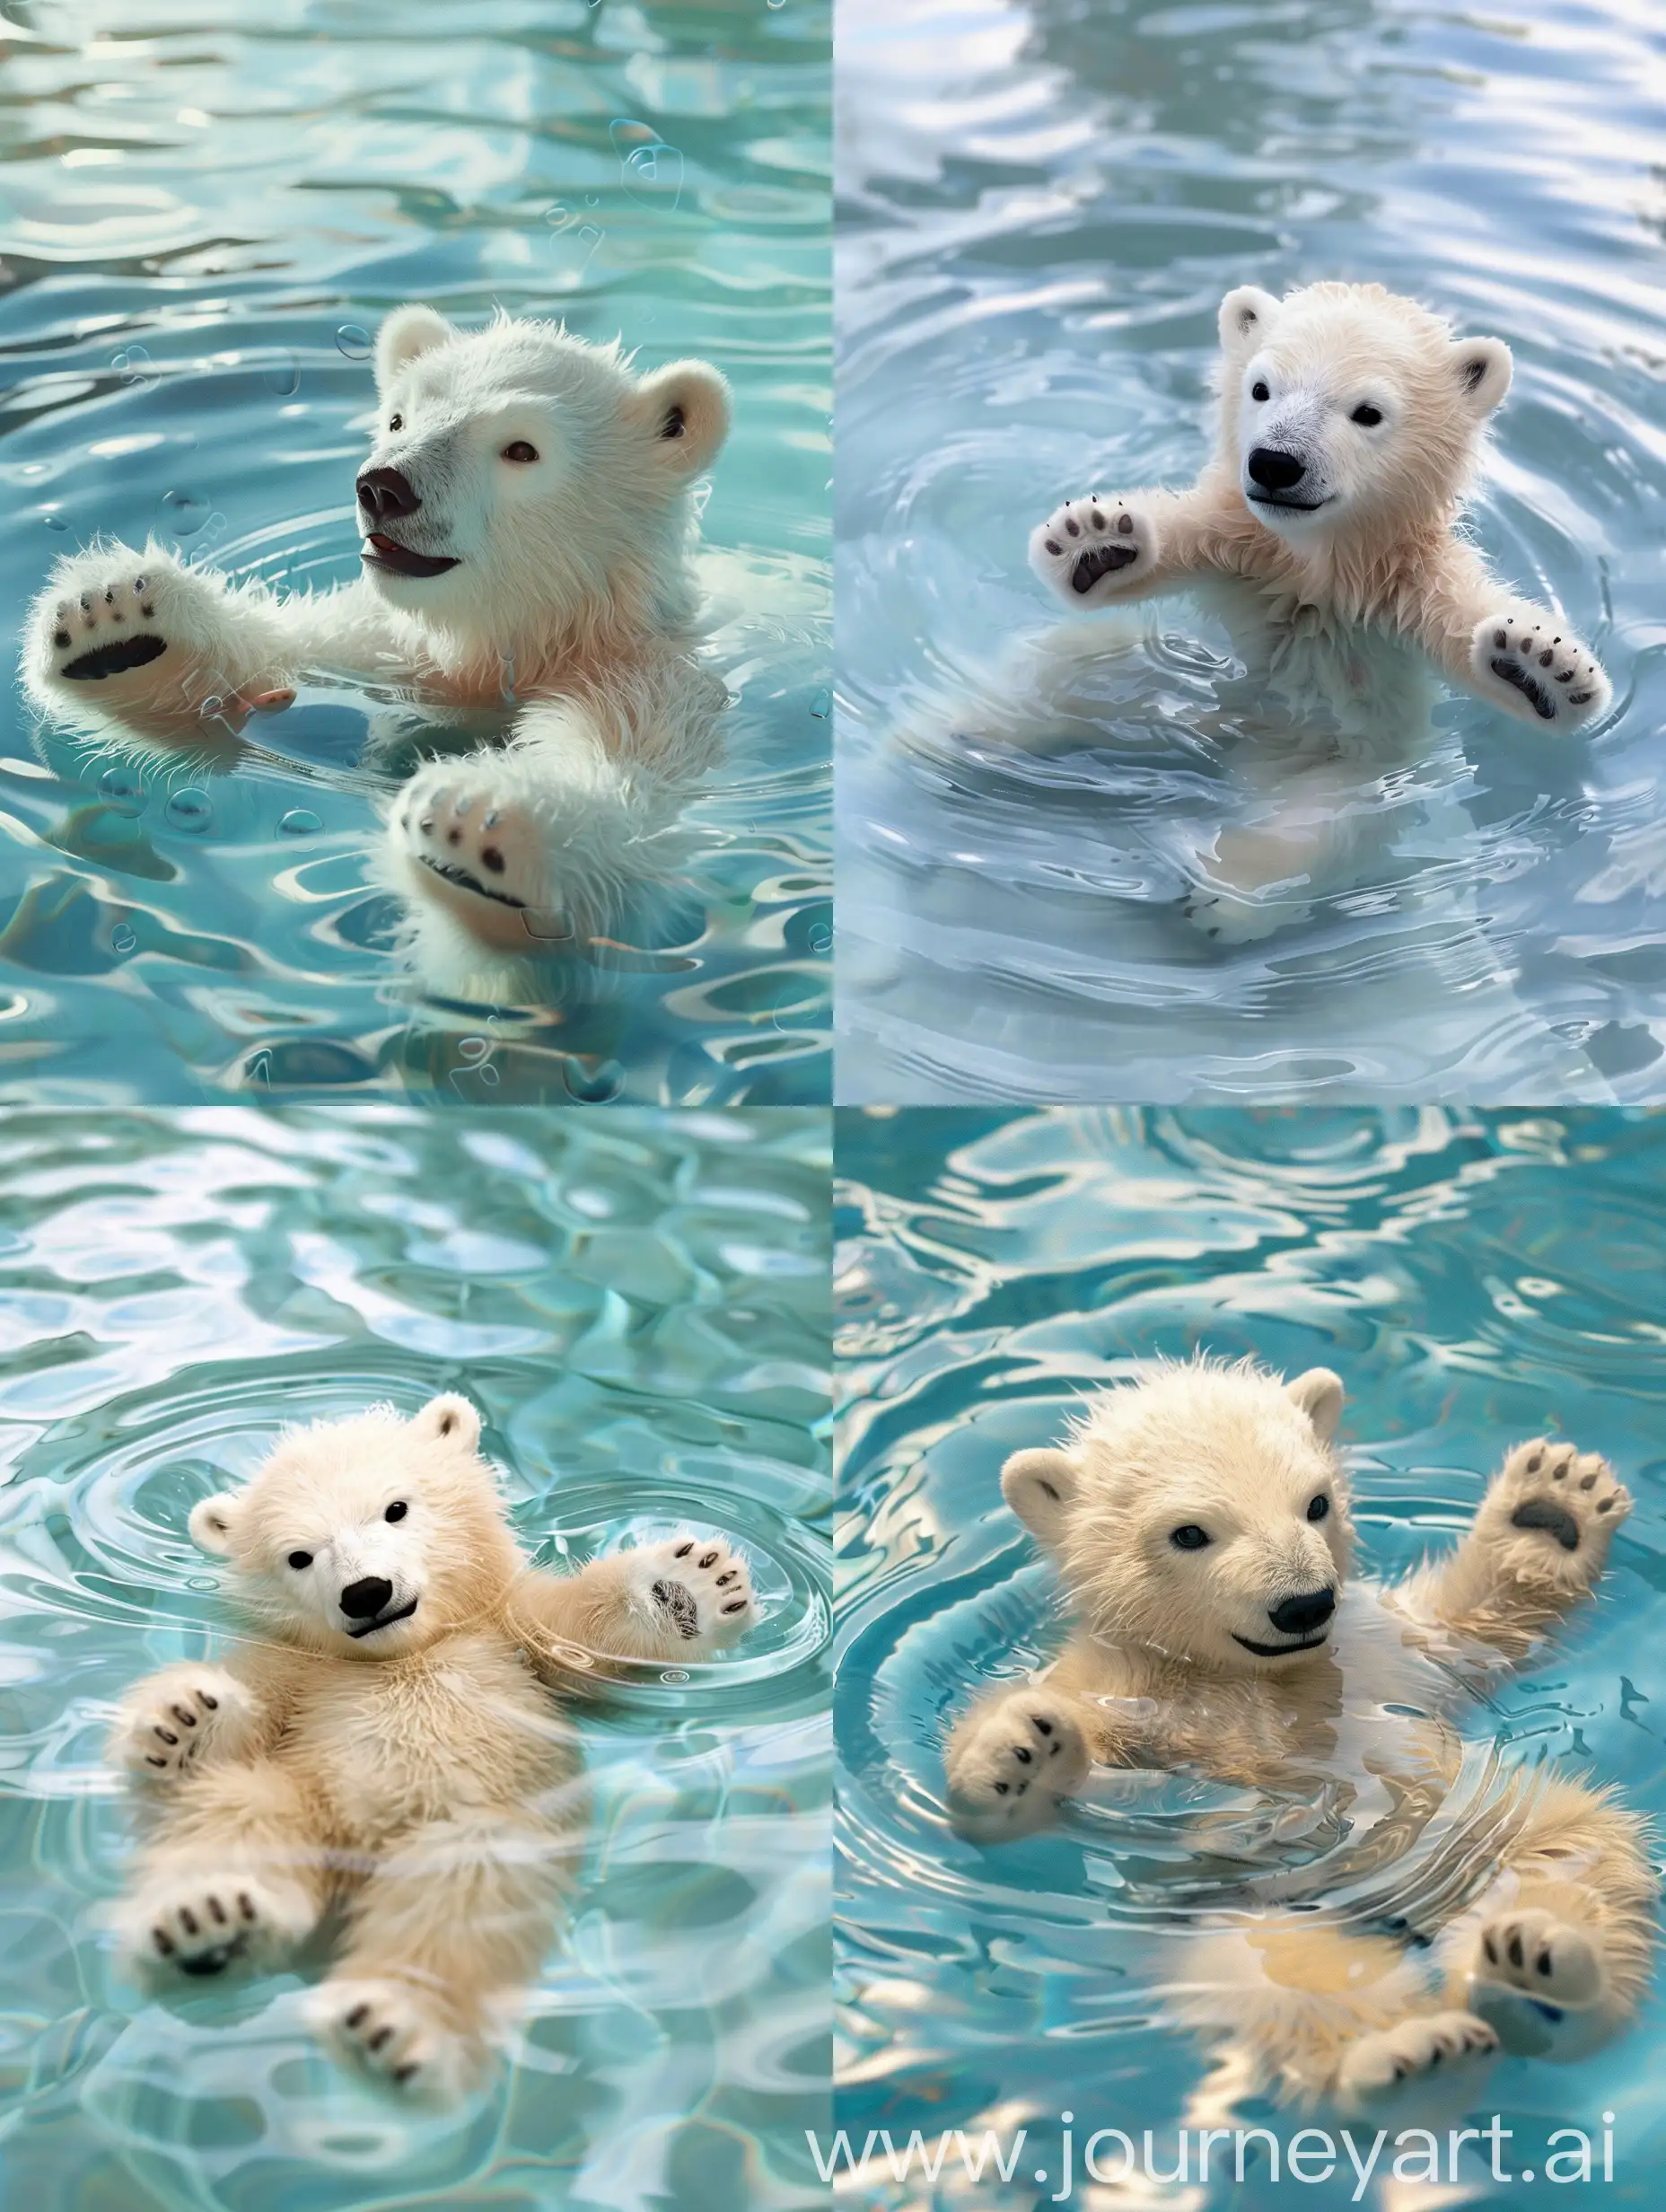 Playful-Baby-Polar-Bear-Splashing-in-Pool-Adorable-Cinematic-Shot